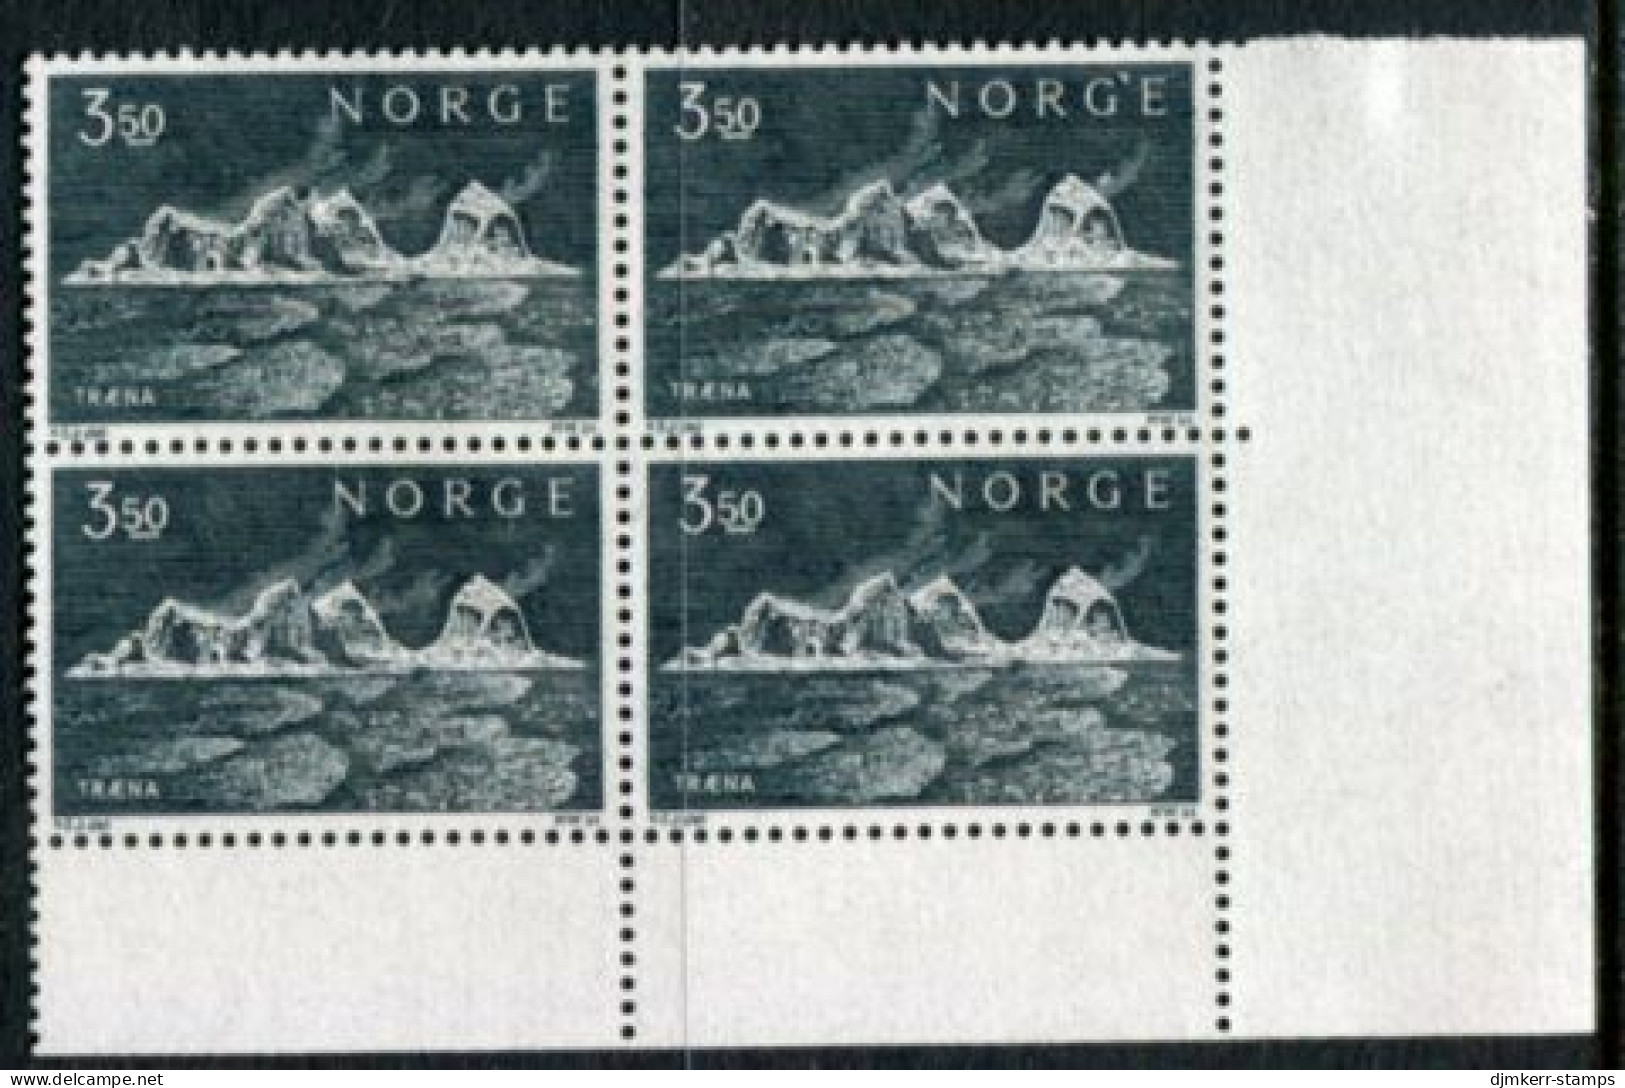 NORWAY 1969 Traena Islands Block Of 4 MNH / **.  Michel 587 - Nuevos